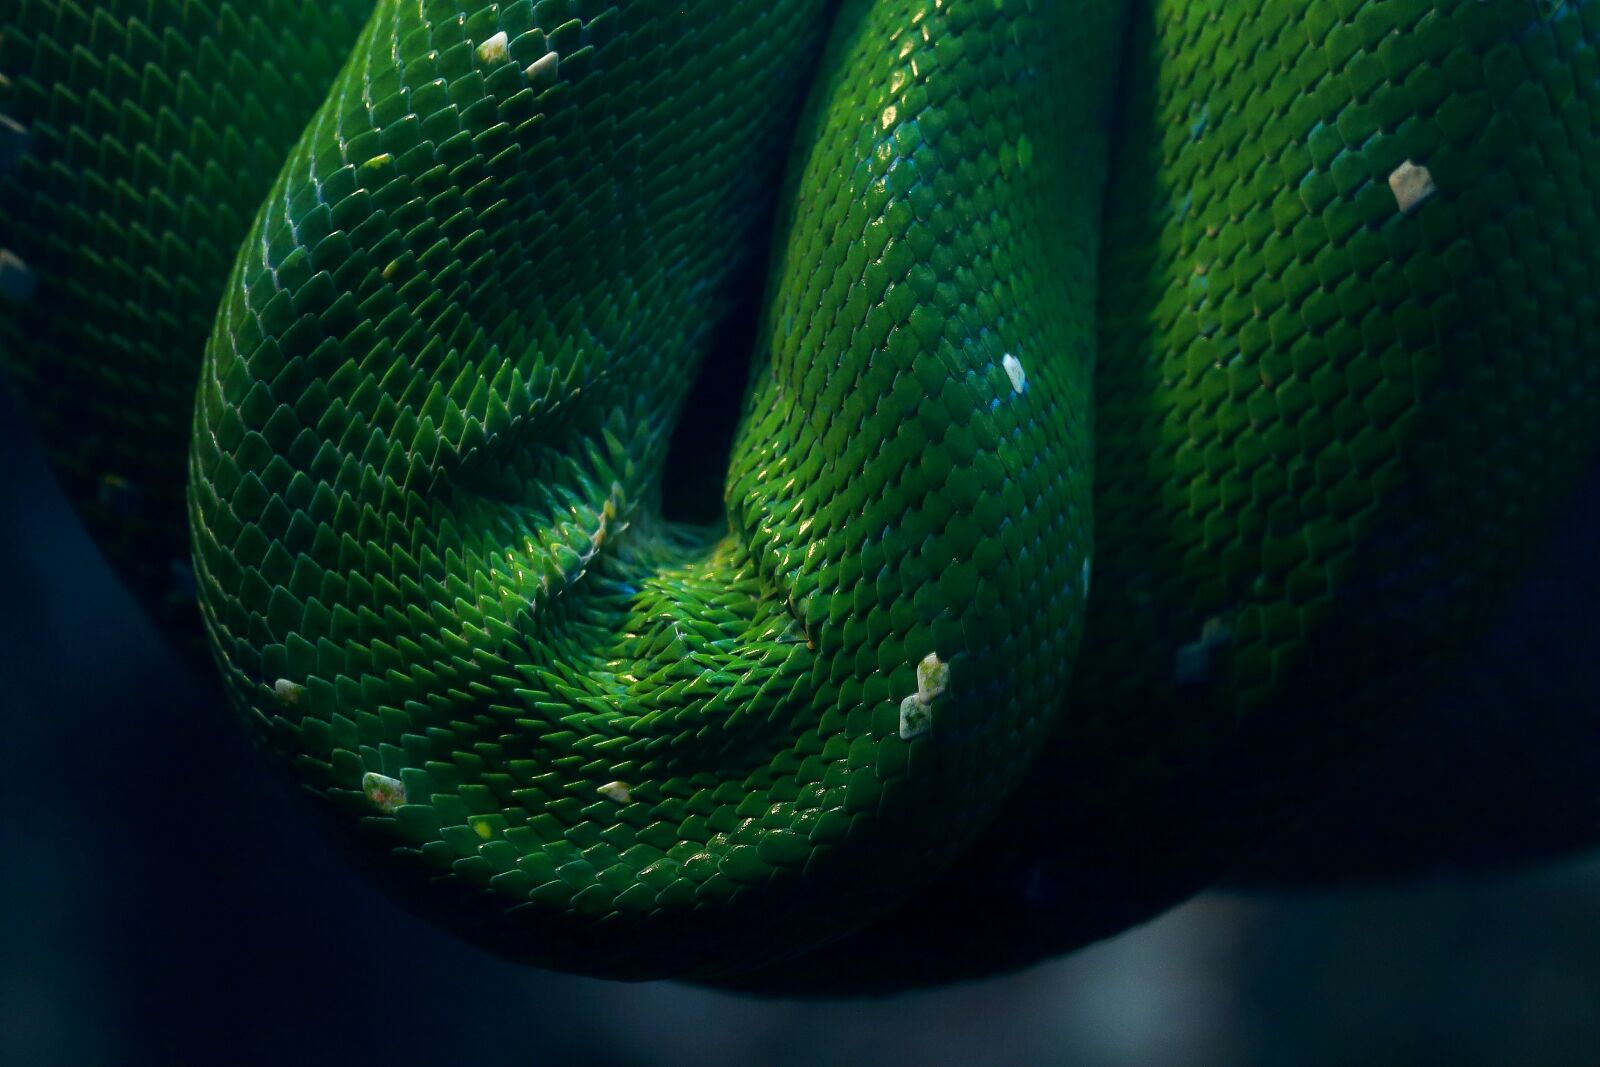 Canon EOS 70D sample photo. Snake, reptile, animal photography